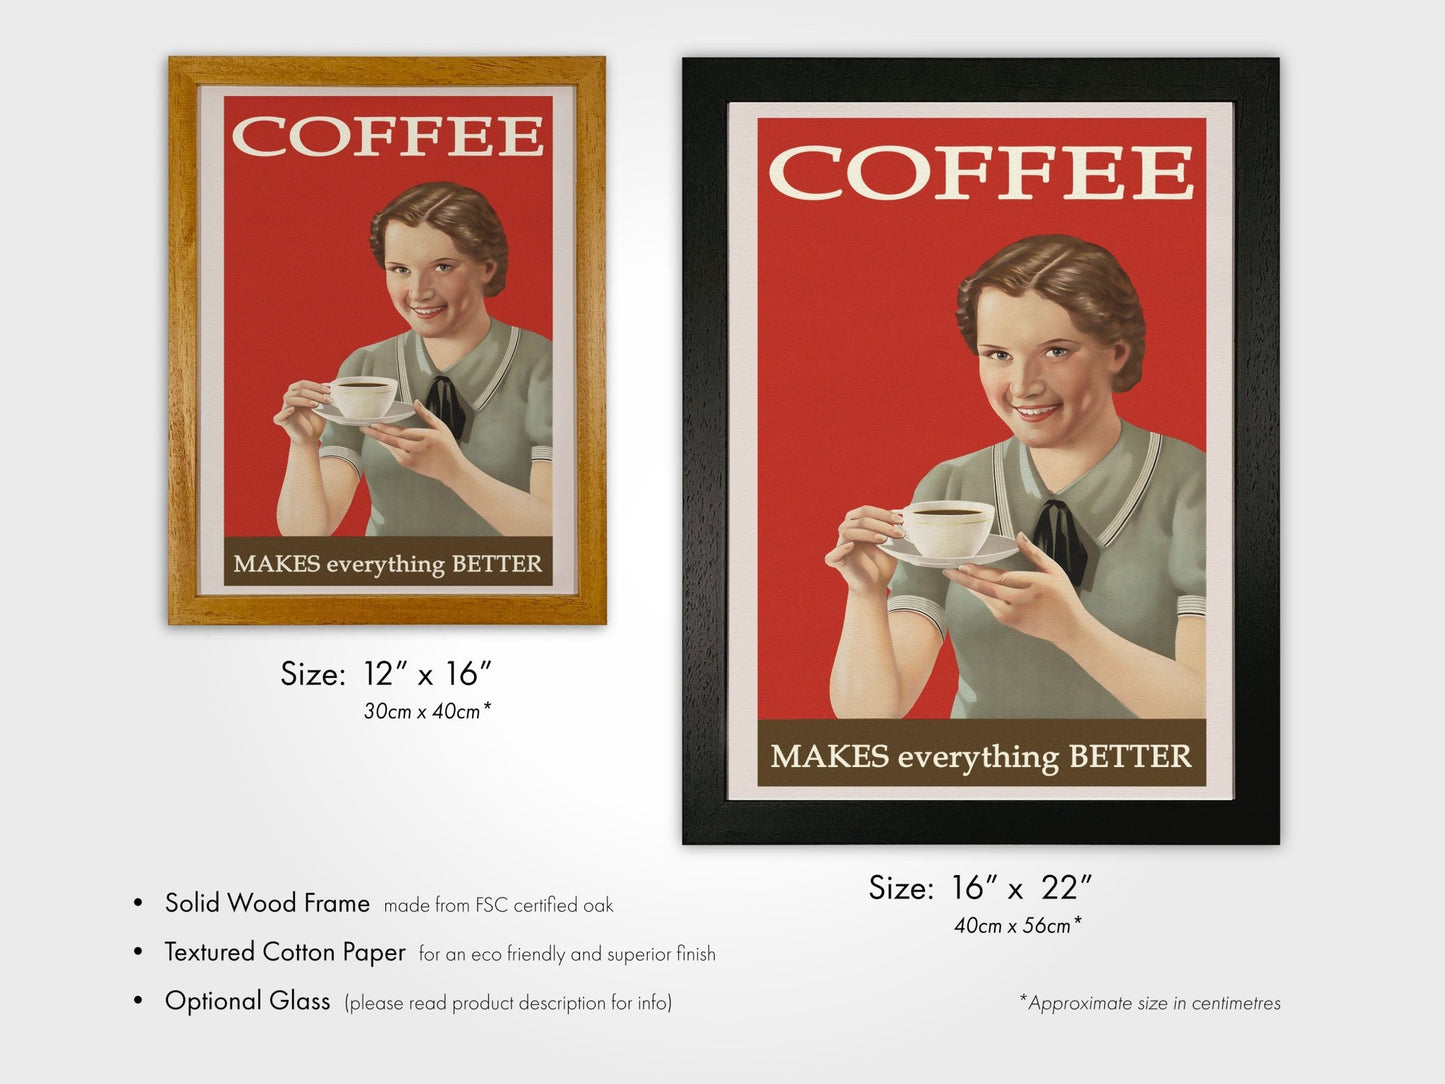 Le café rend tout meilleur - Slogan Vintage Poster